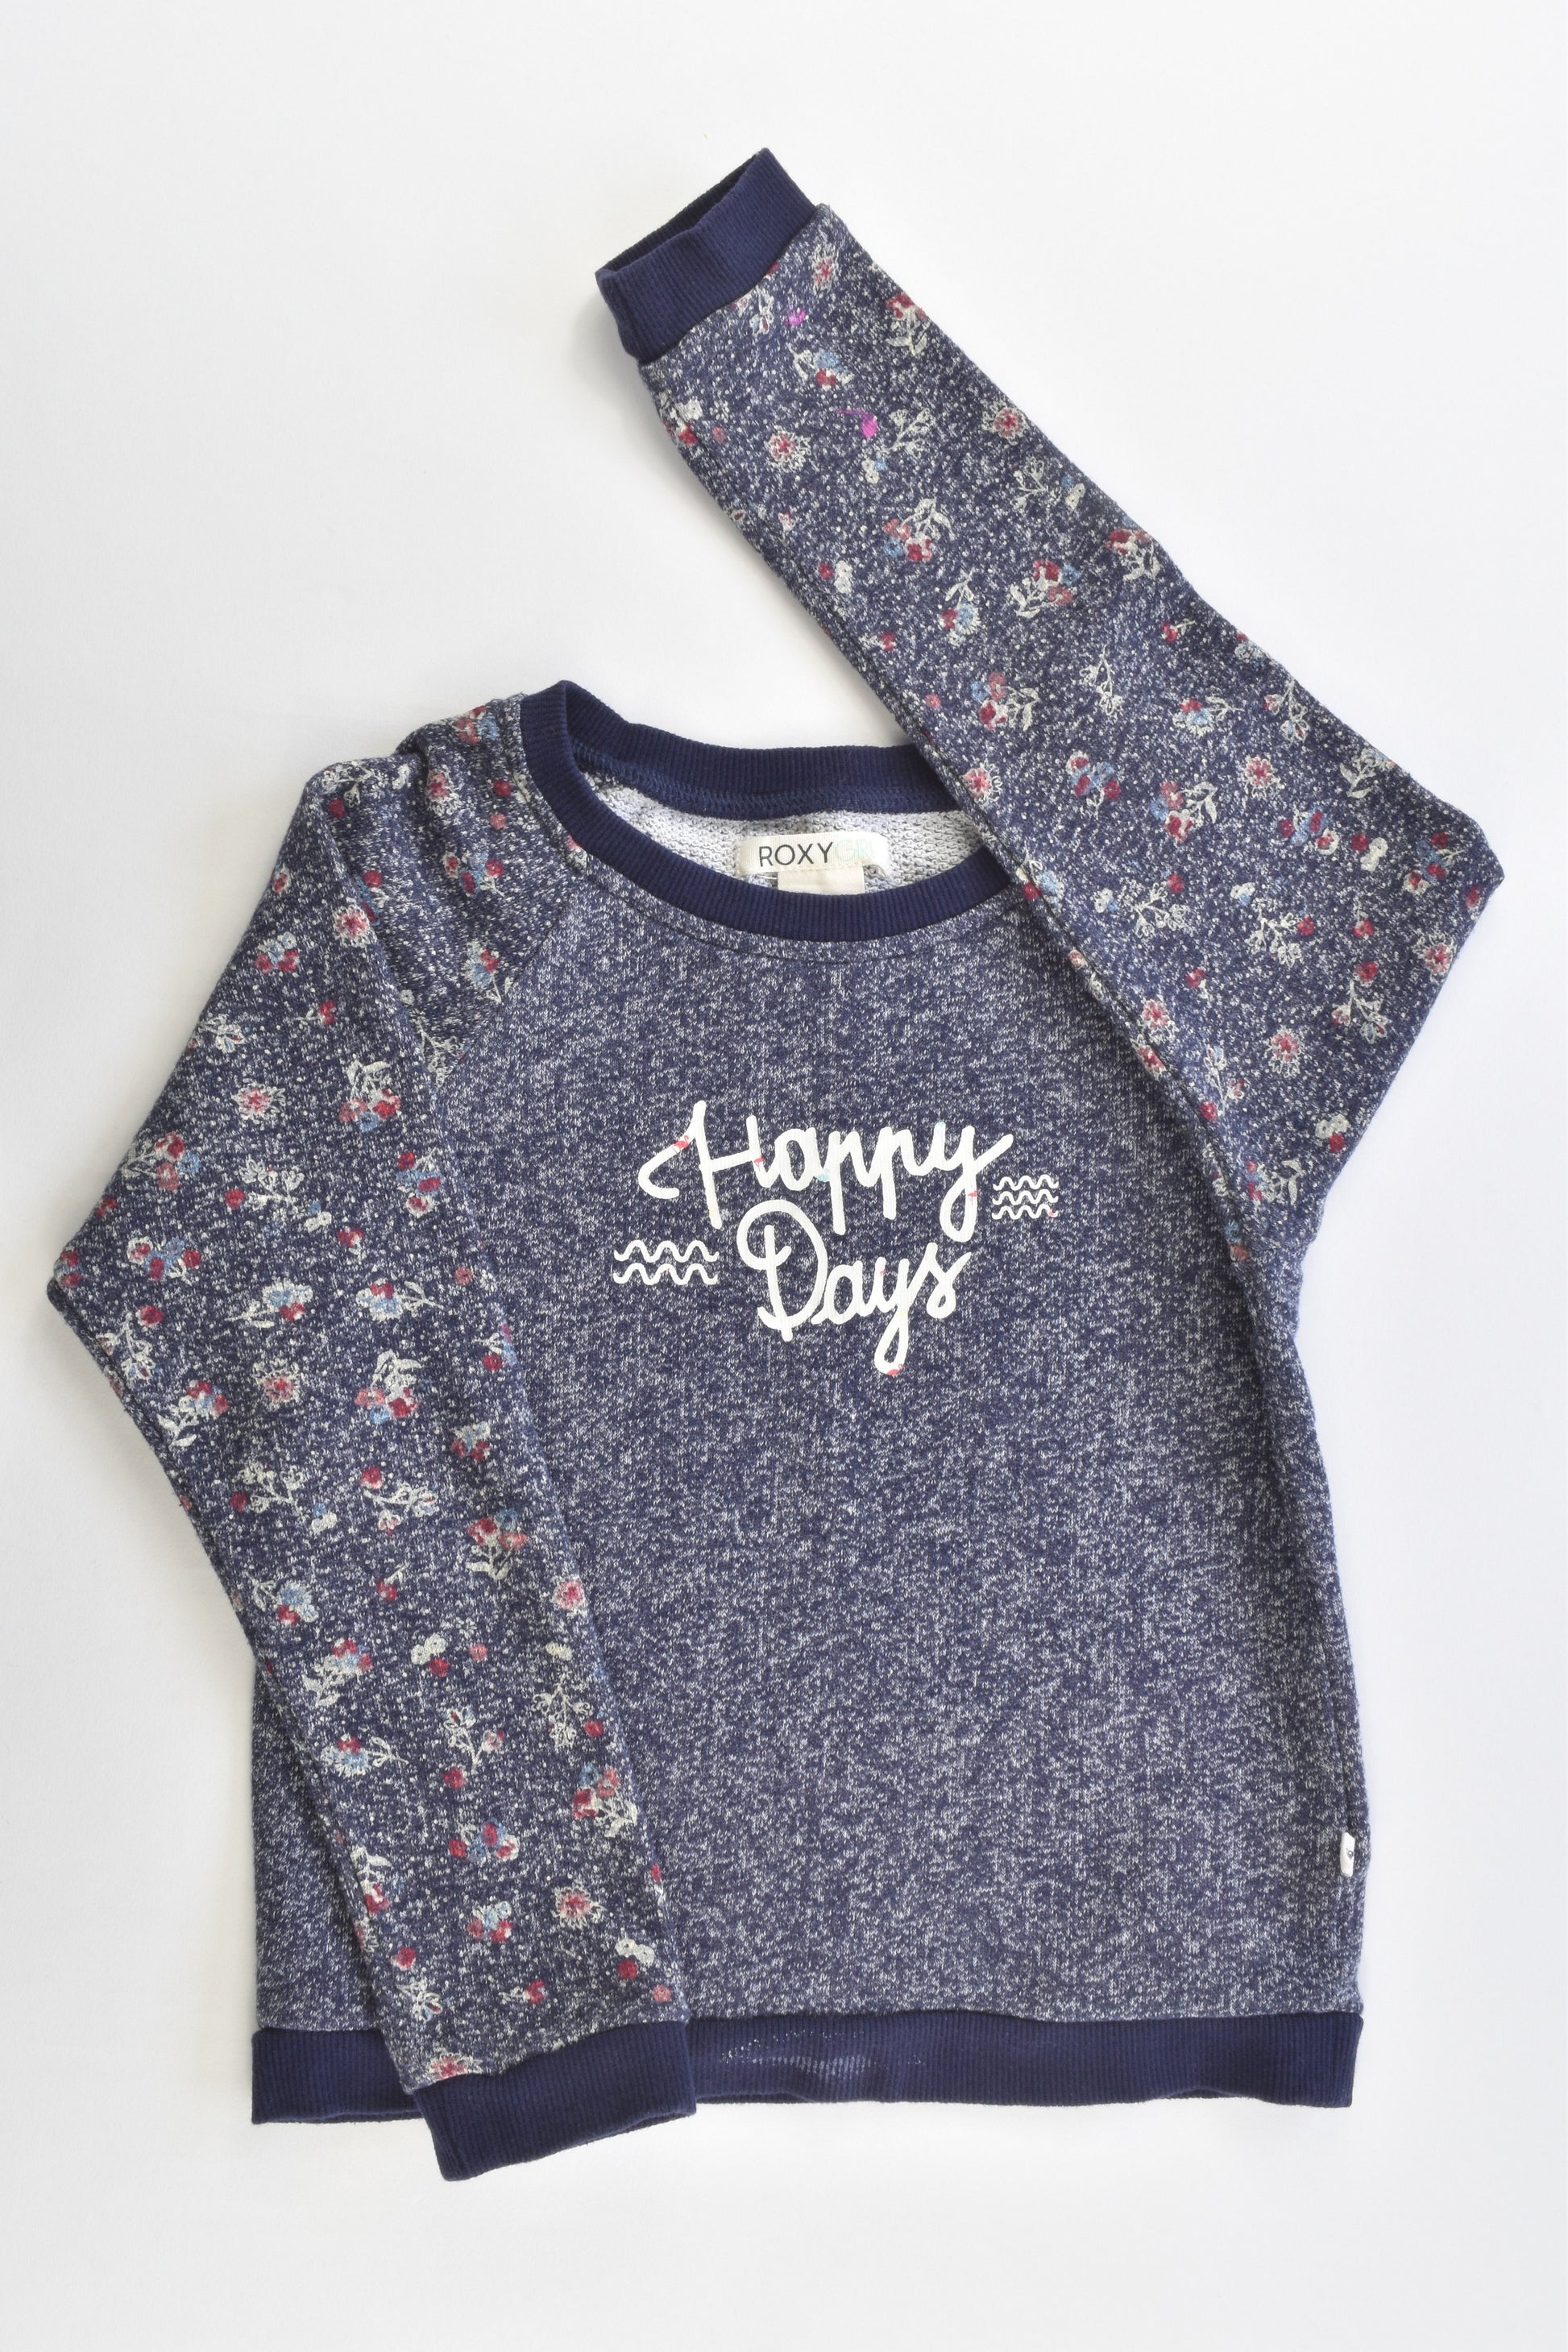 Roxy Size 6 'Happy Days' Sweater